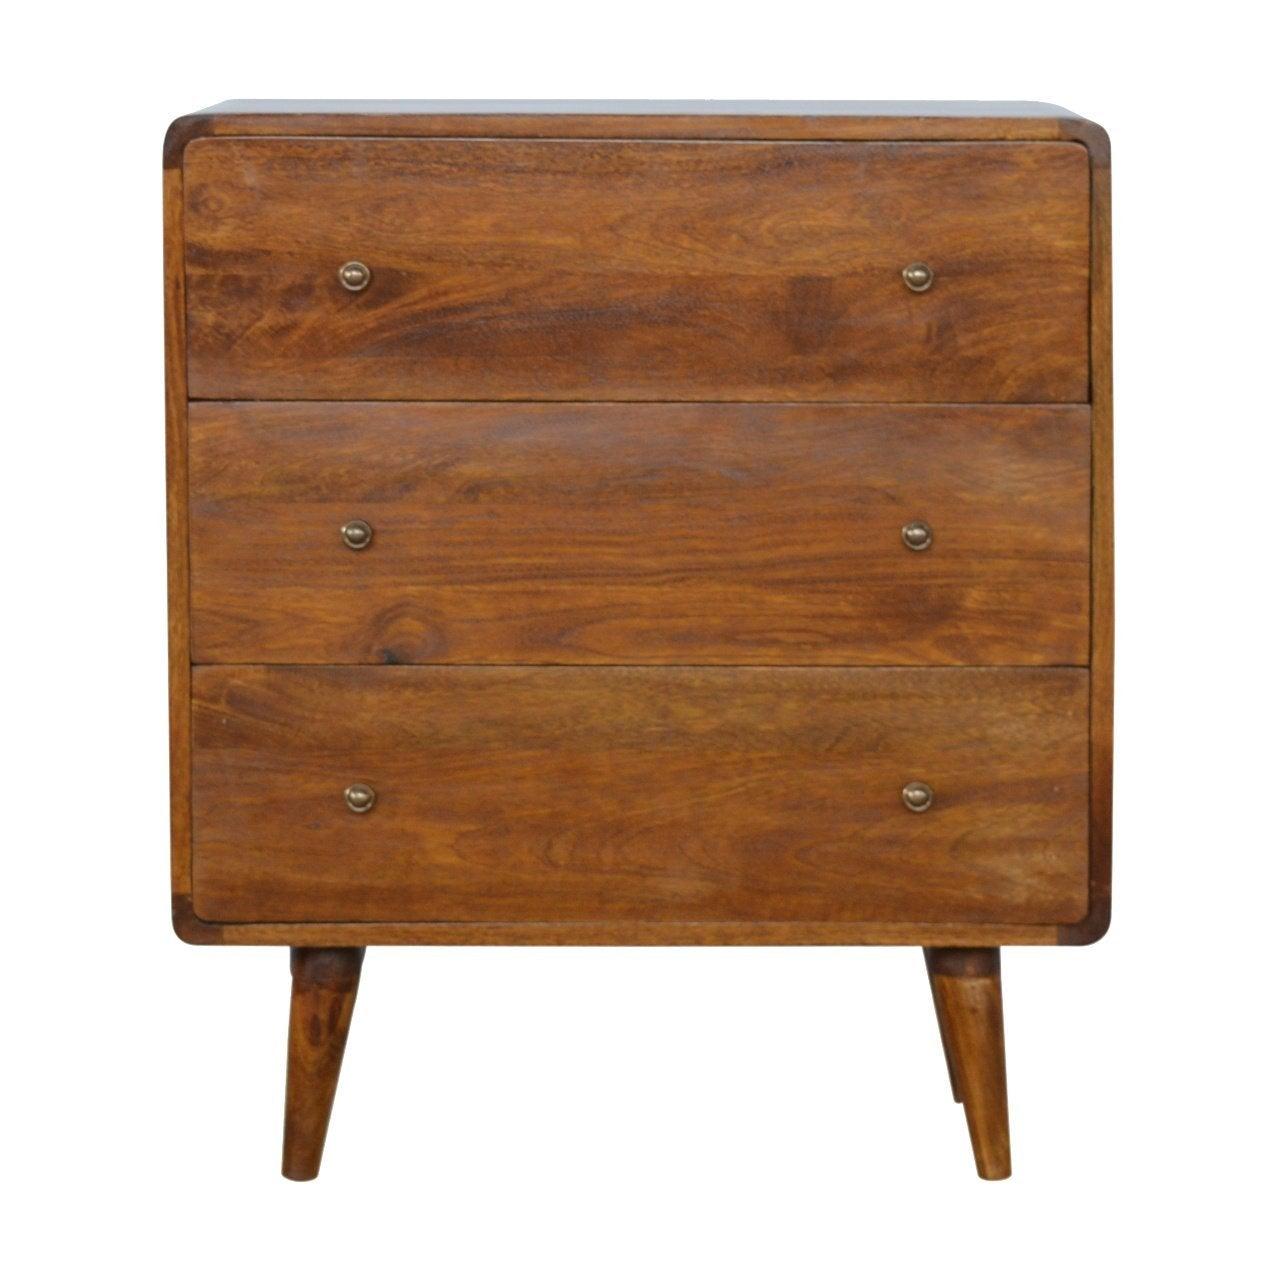 Curved chestnut chest - crimblefest furniture - image 1